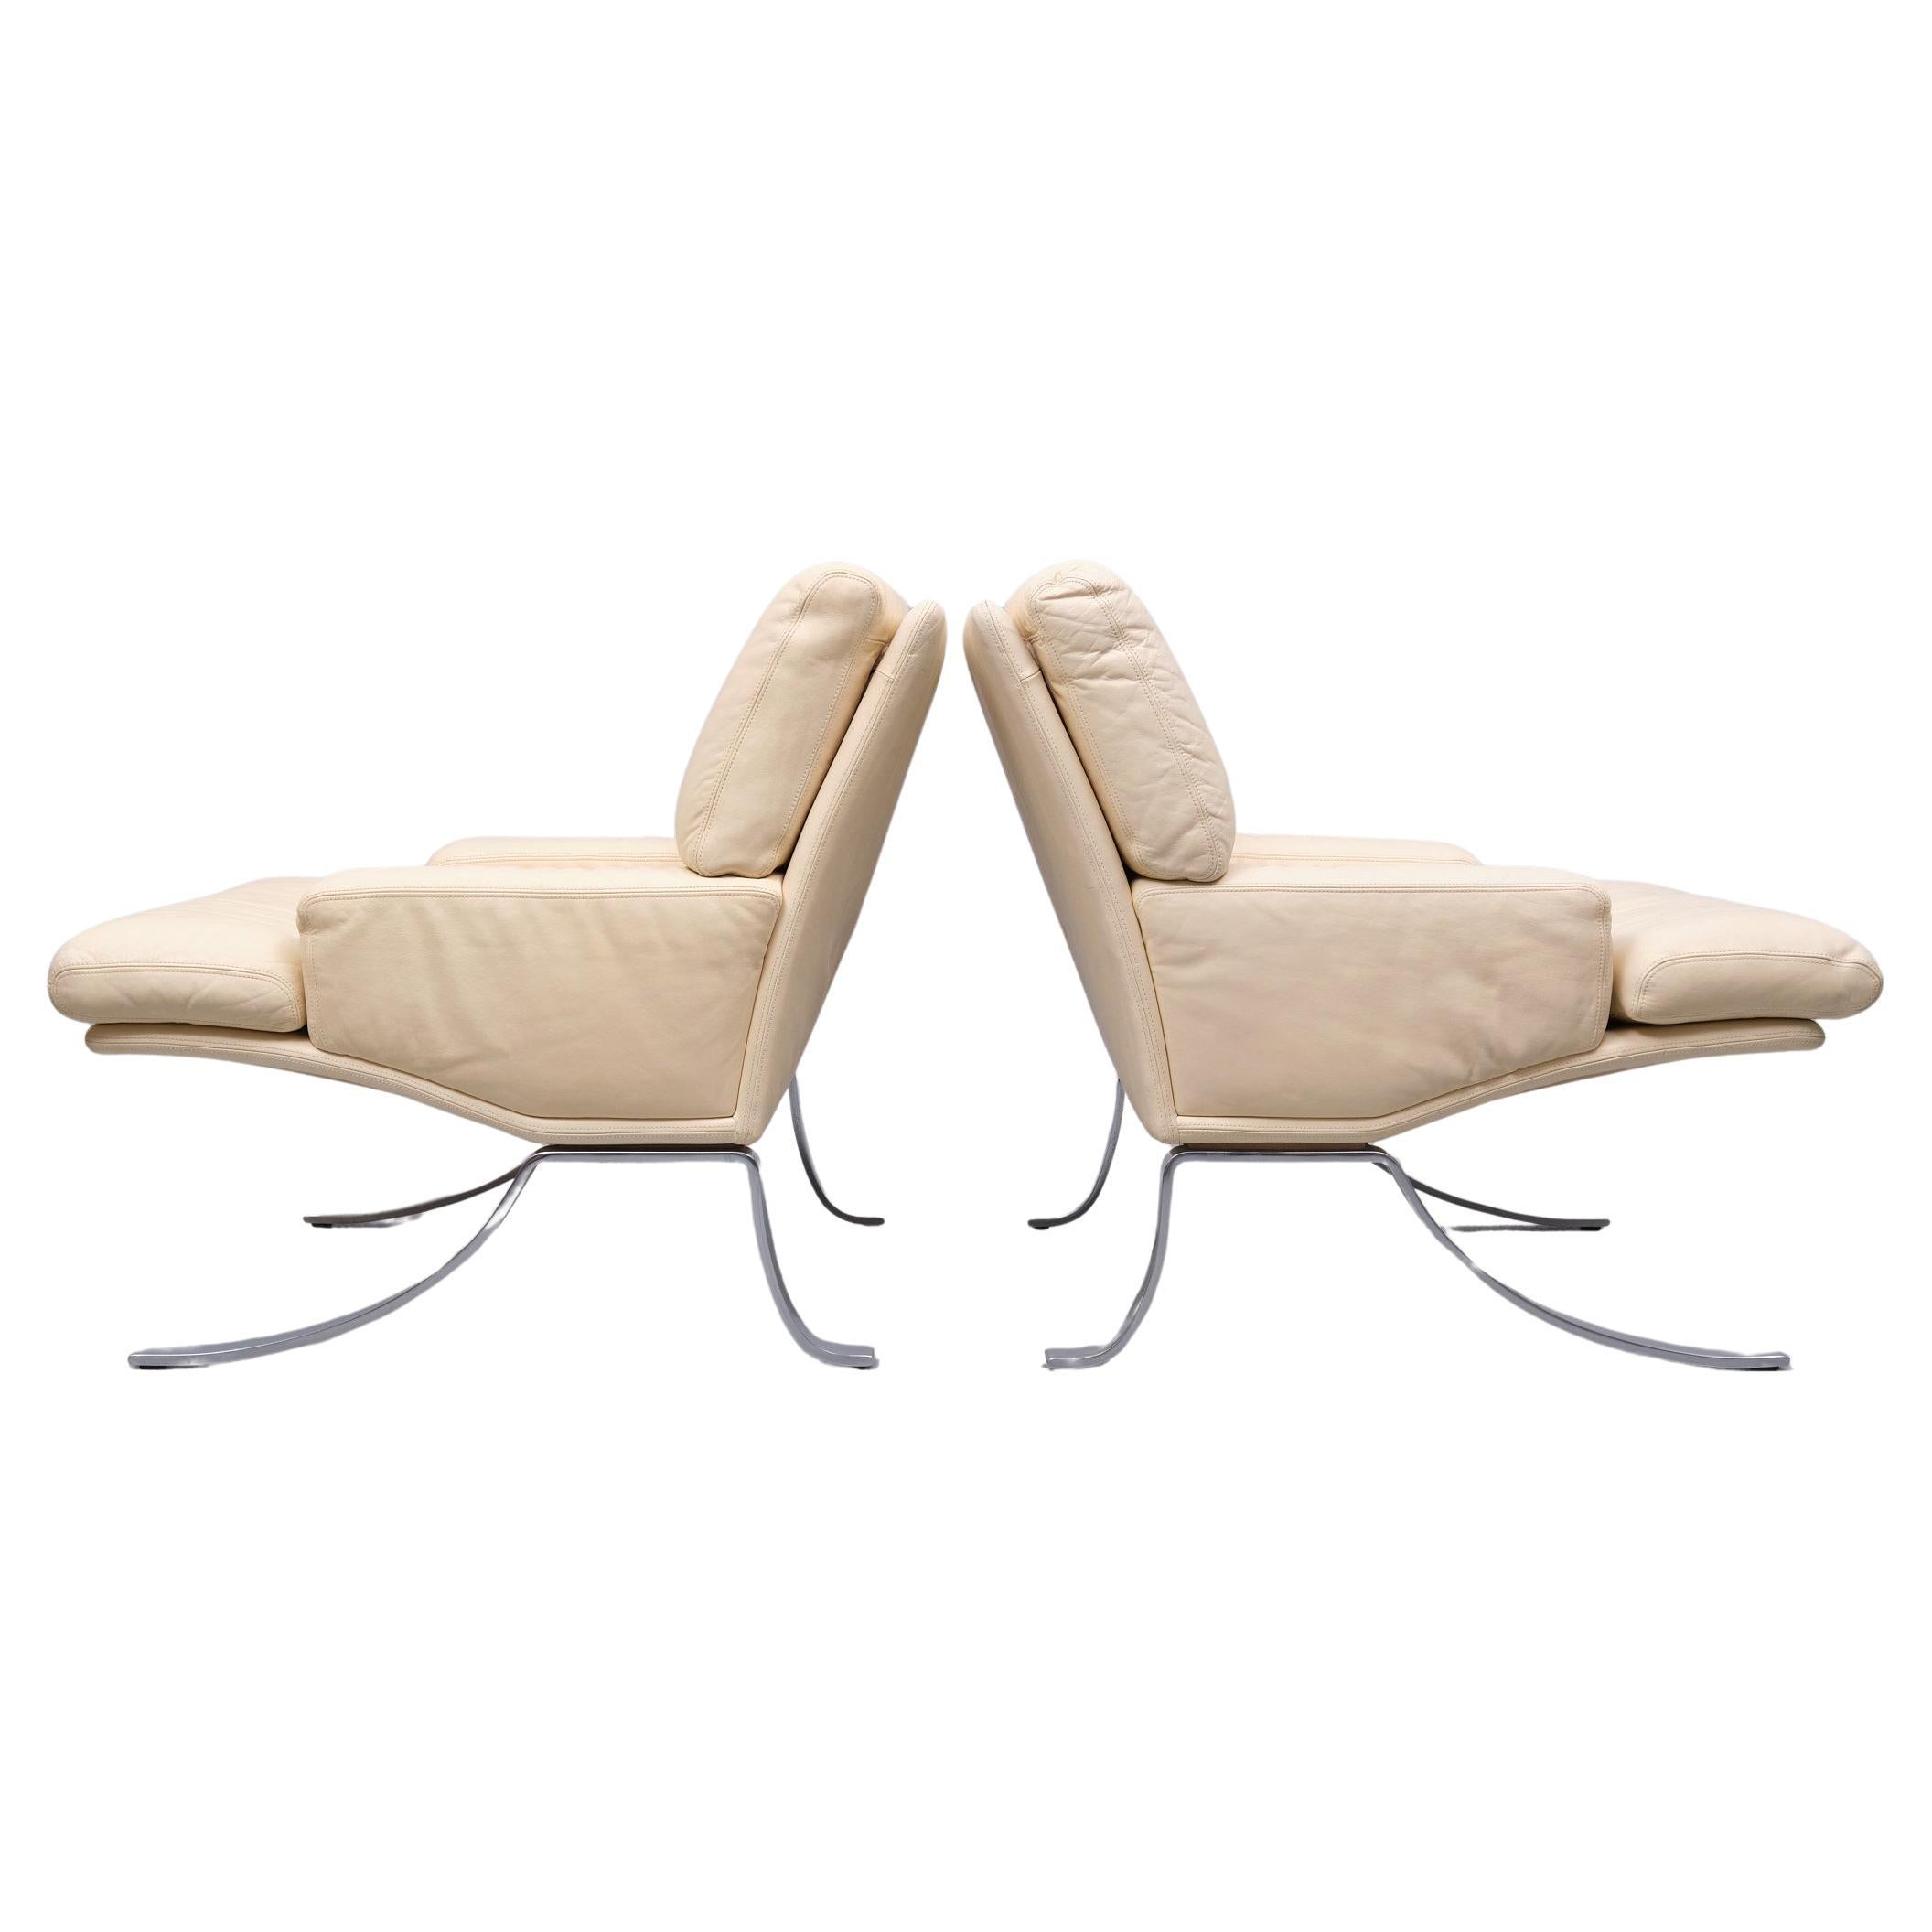 Hervorragendes Set von Lounge Chairs und Ottomane. Hergestellt von Durlet Belgien 1970er Jahre 
Elfenbeinfarbenes Leder, auf einer Chrom-Stahl-Basis. Sehr guter Sitzkomfort.
Super selten . Sieht aus wie etwas aus den Thunderbird's . so stilvoll .